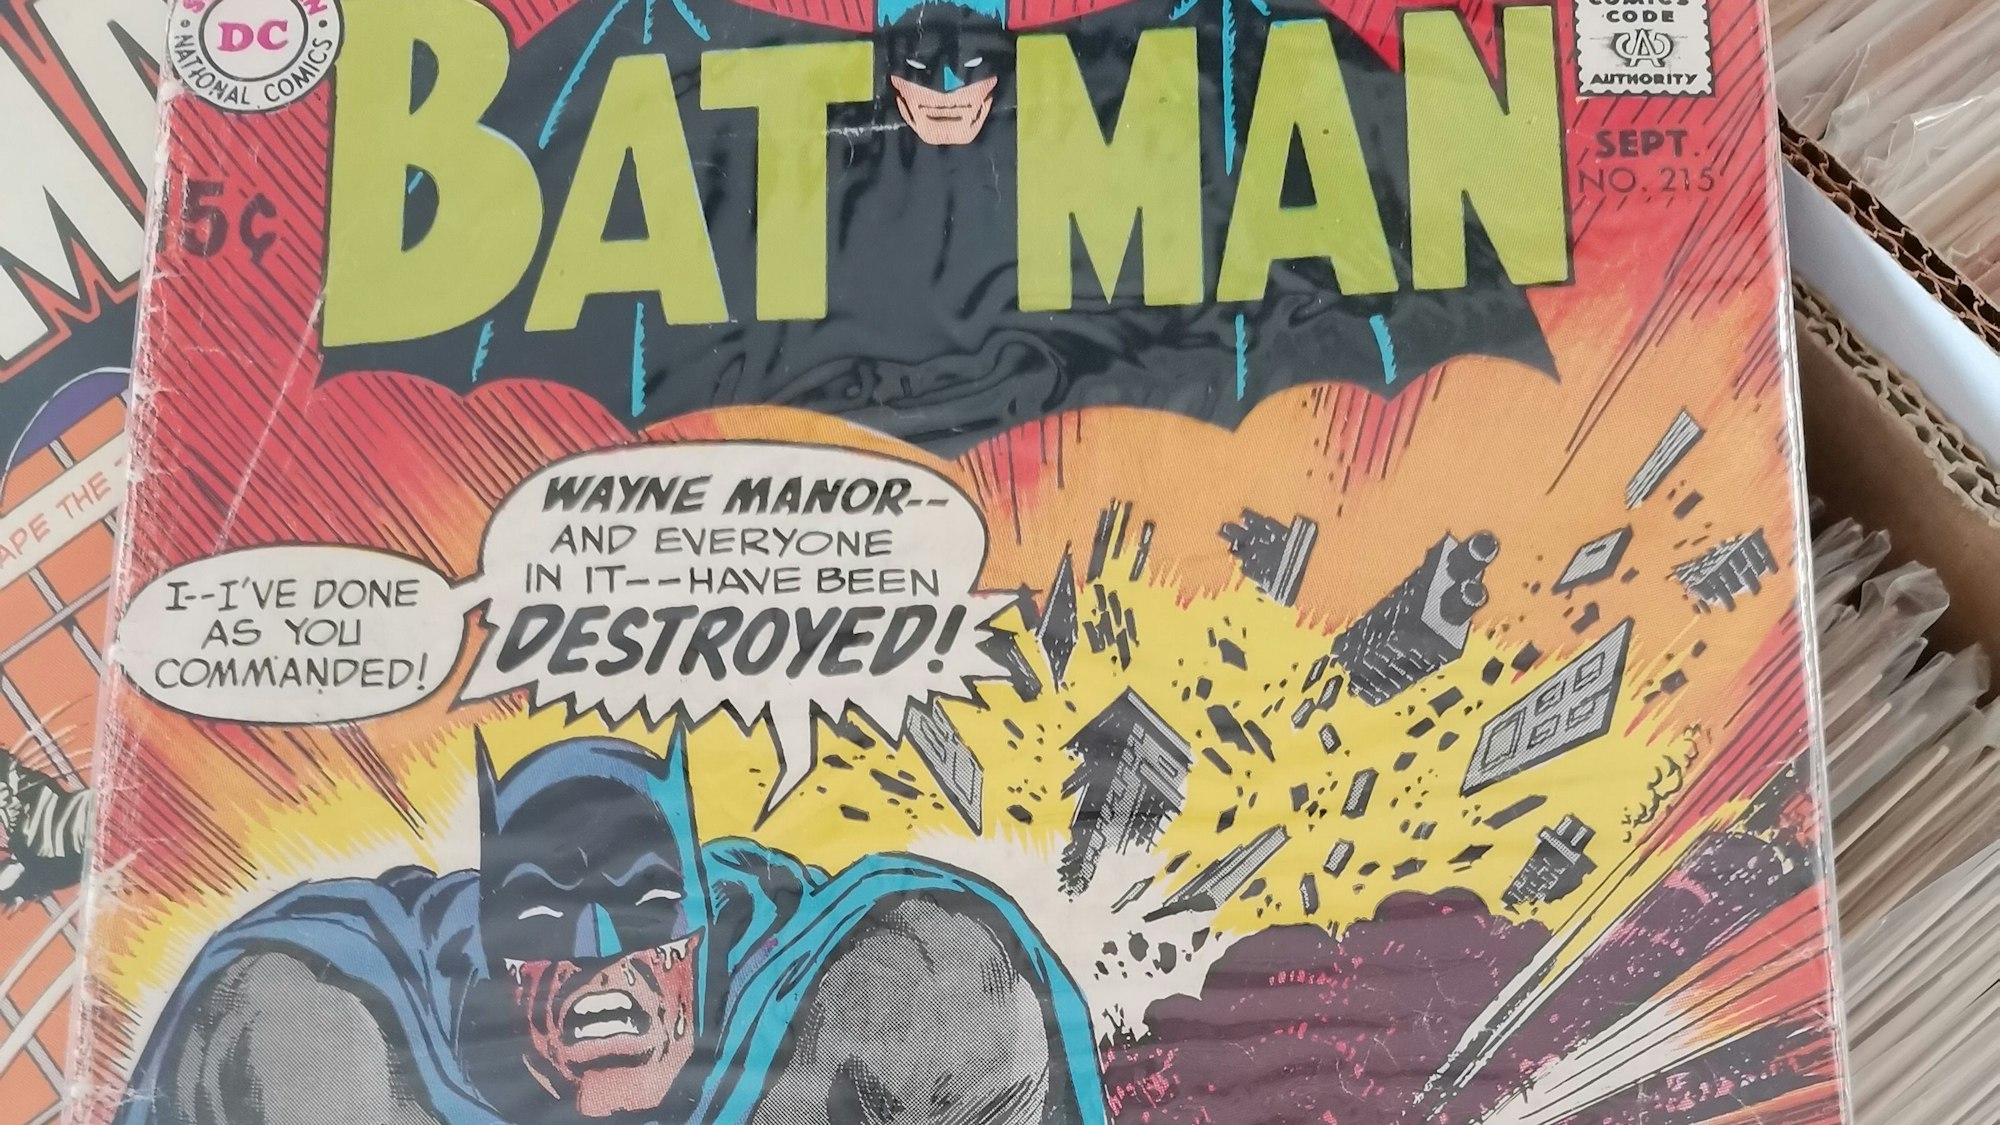 Zu sehen ist das Cover eines Batman-Covers.